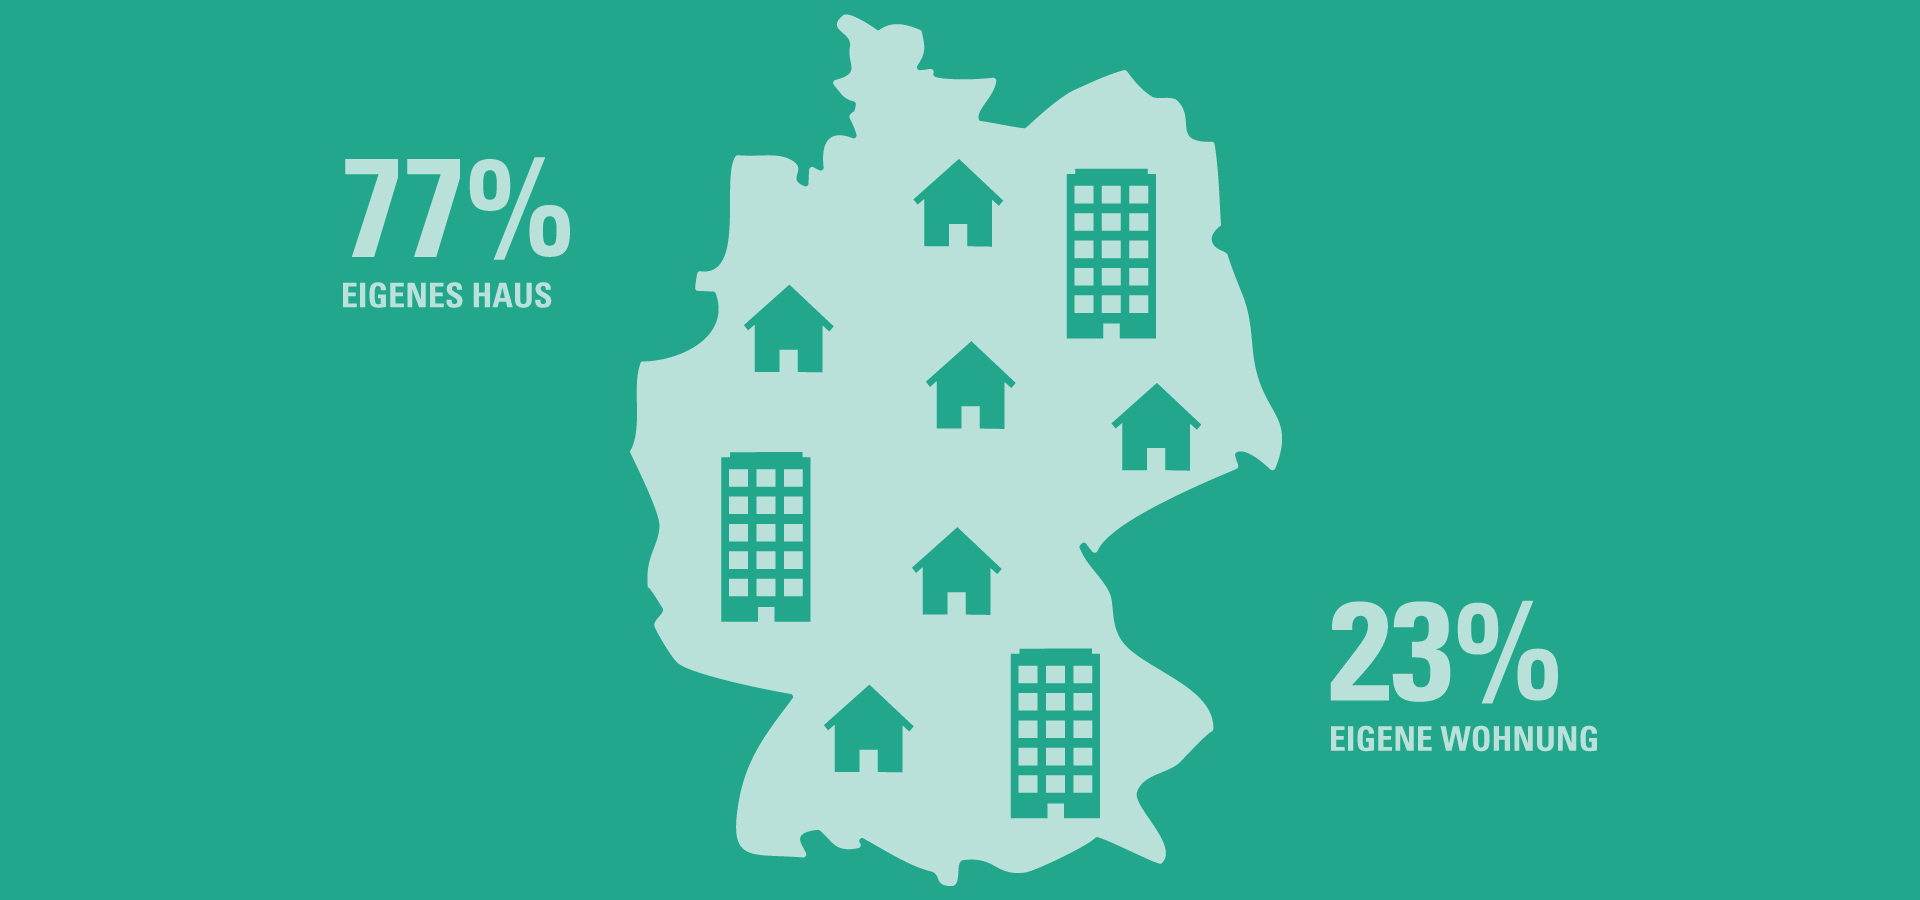 Verteilung Eigentümer: 77% eigenes Haus - 23% eigene Wohnung